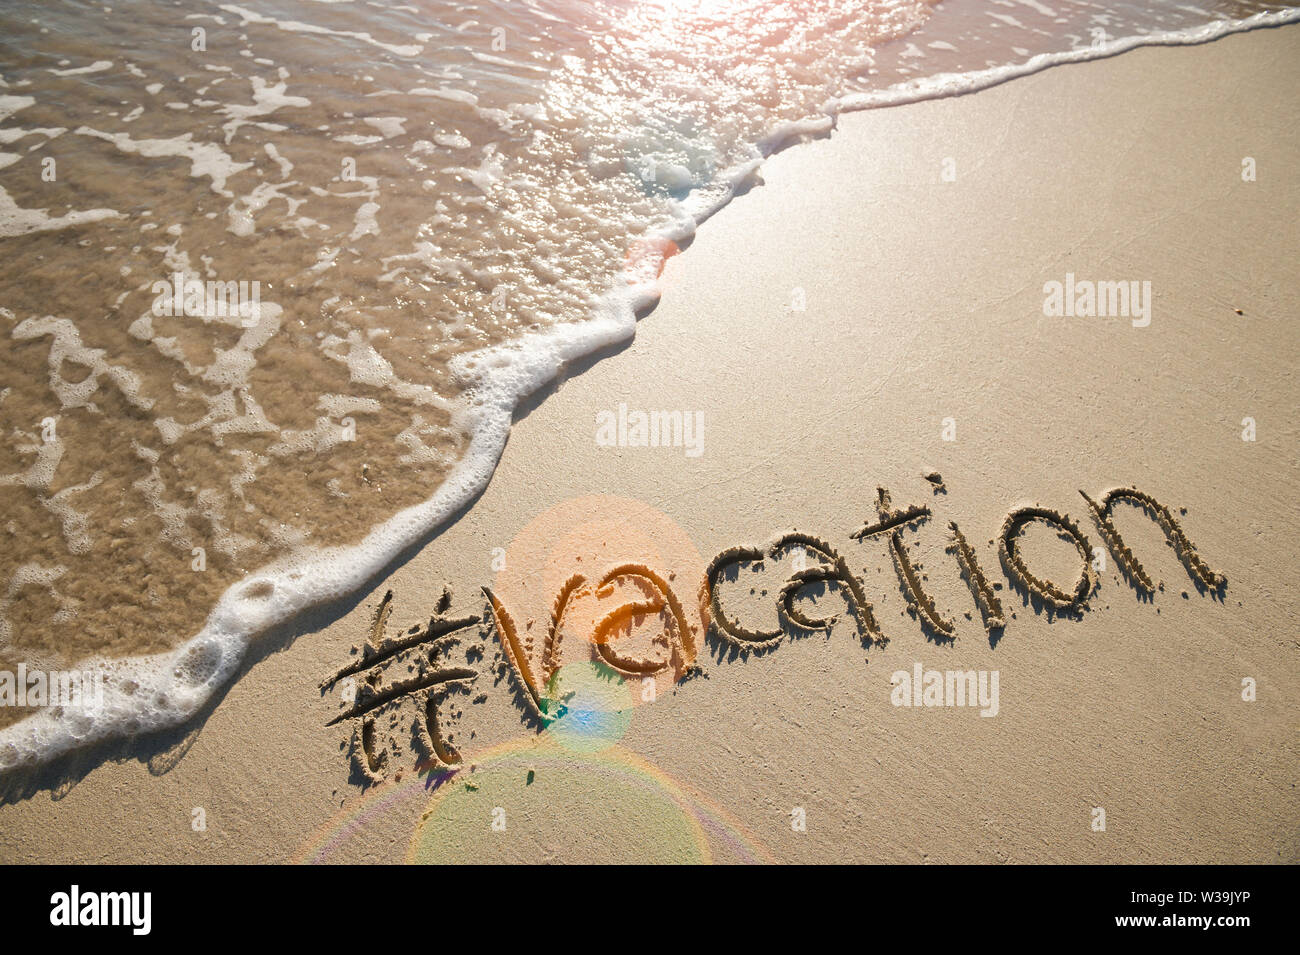 Modernes reisen Nachricht für den Strand mit einem Social Media - freundliche Hashtag mit dem Wort "Urlaub" in Glatten Sand mit ankommenden Welle geschrieben Stockfoto